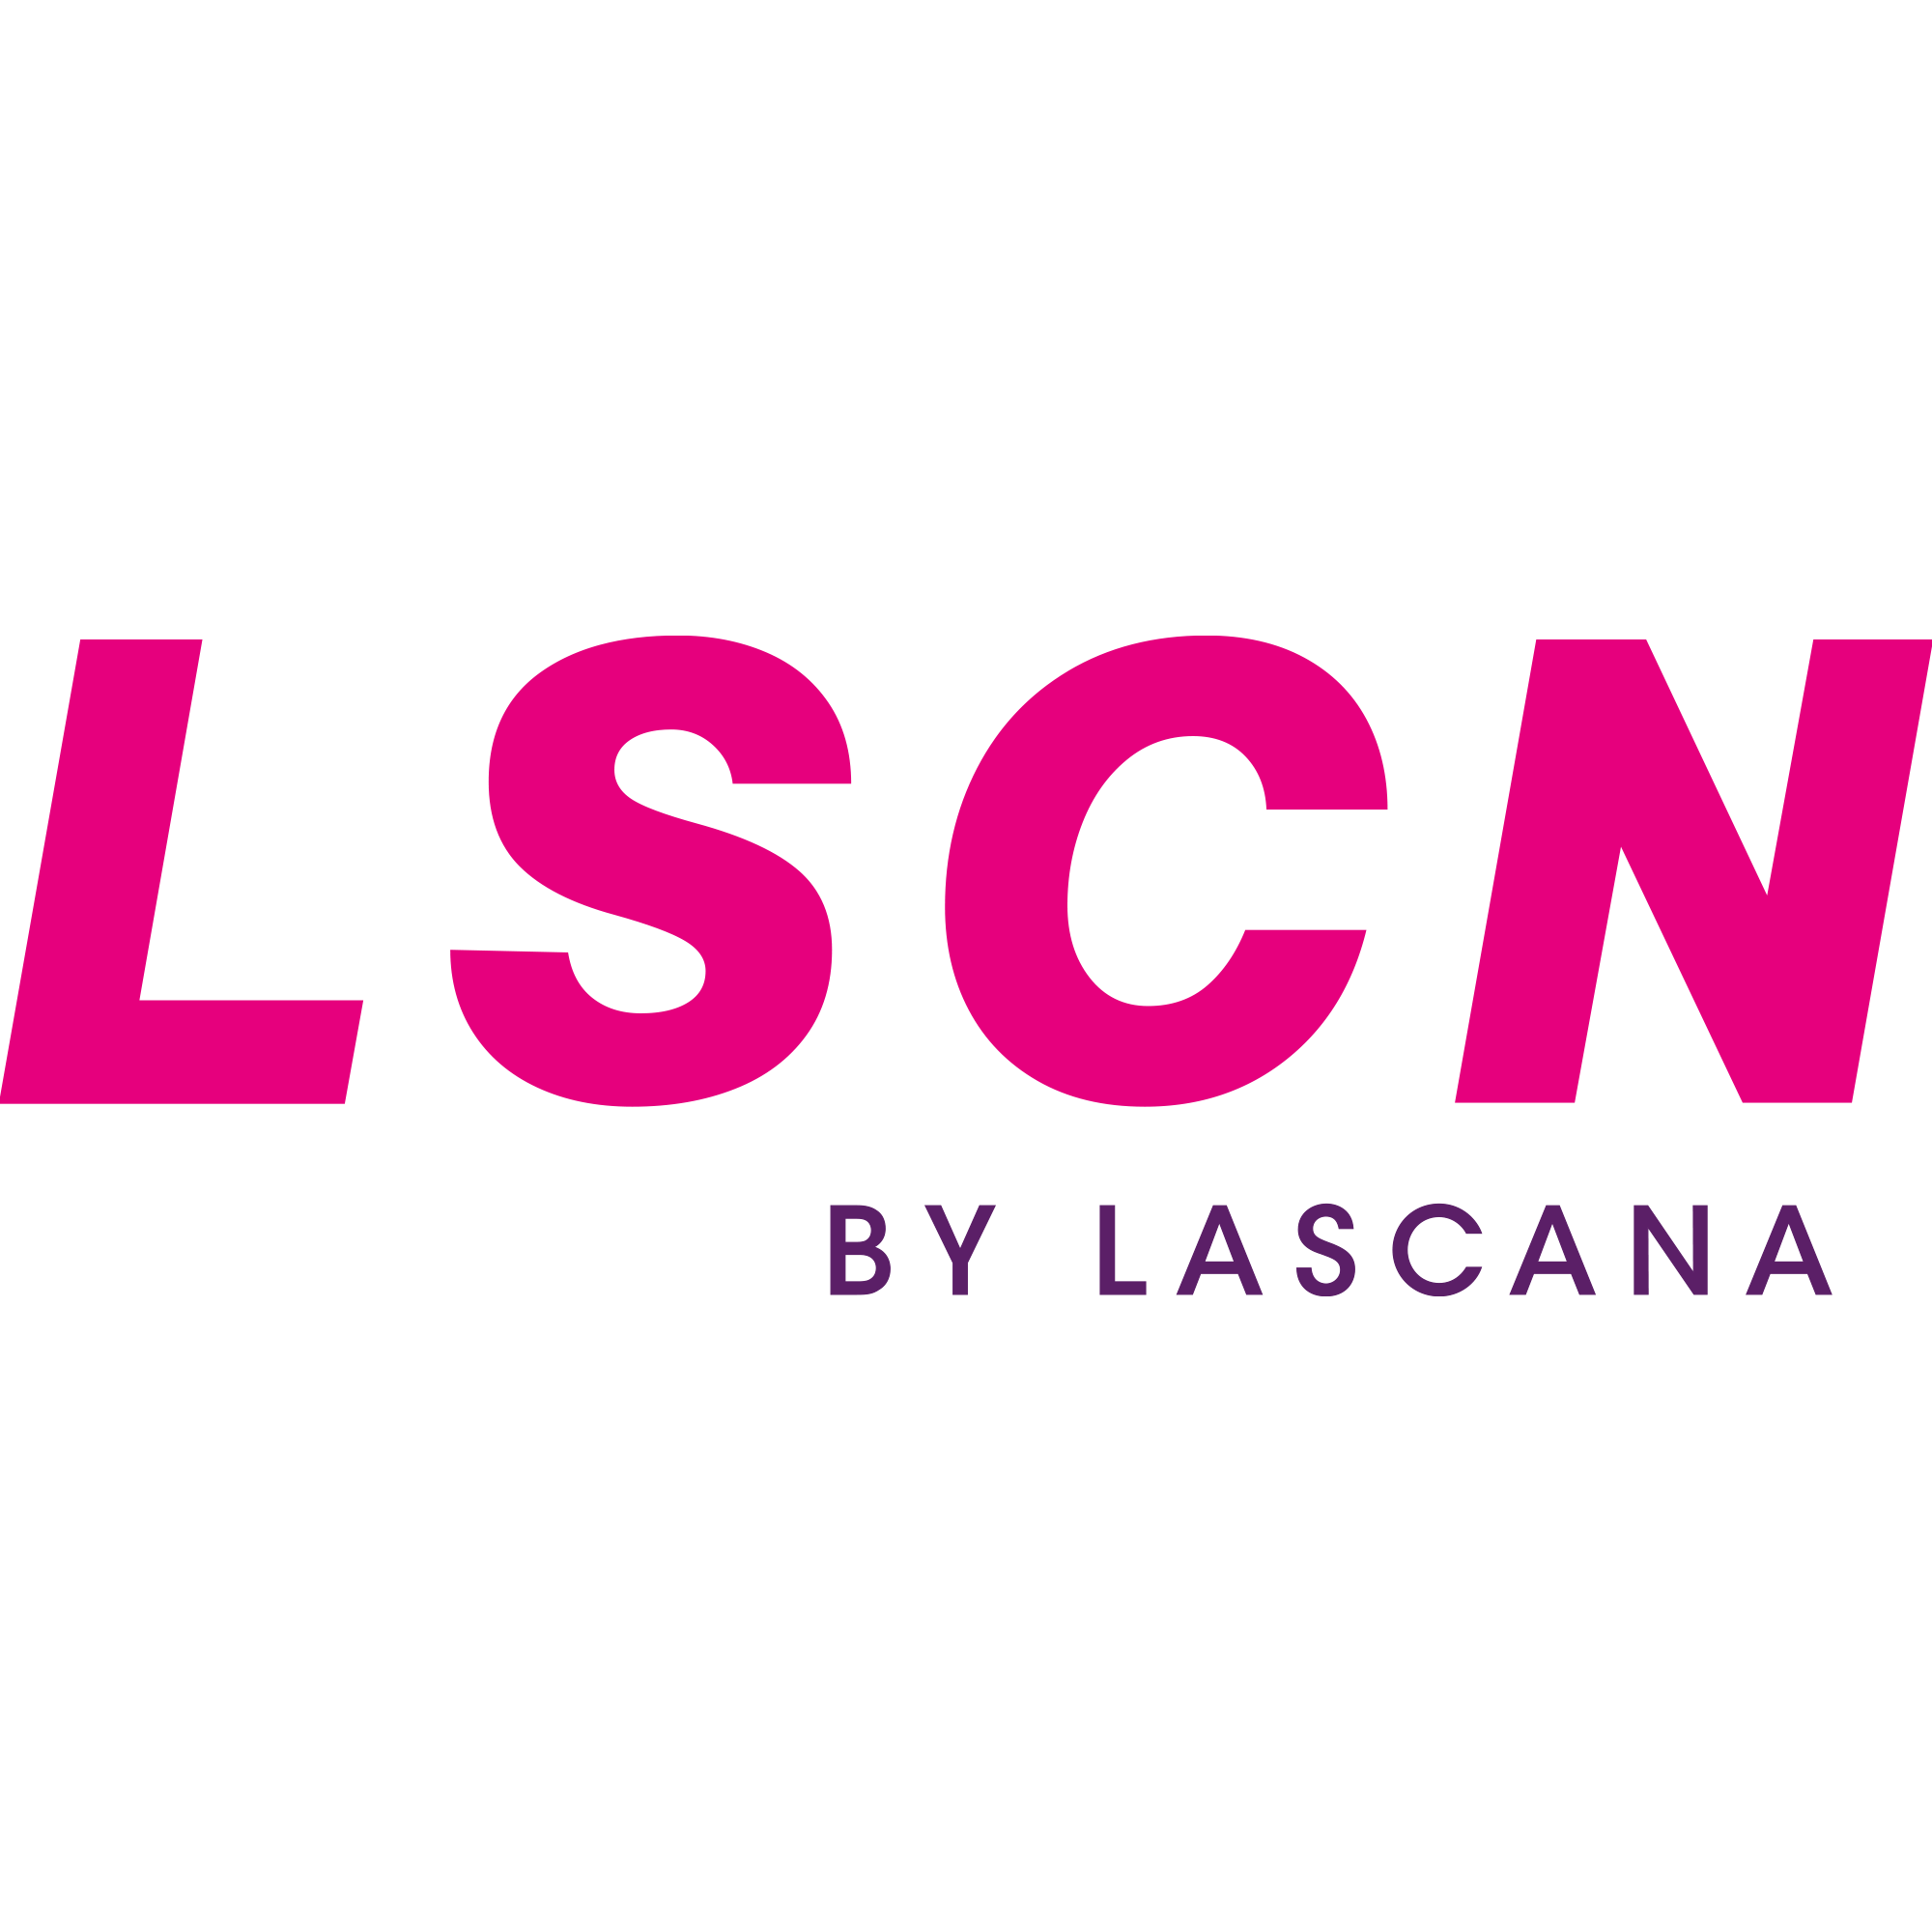 Weitere Artikel von LSCN by Lascana